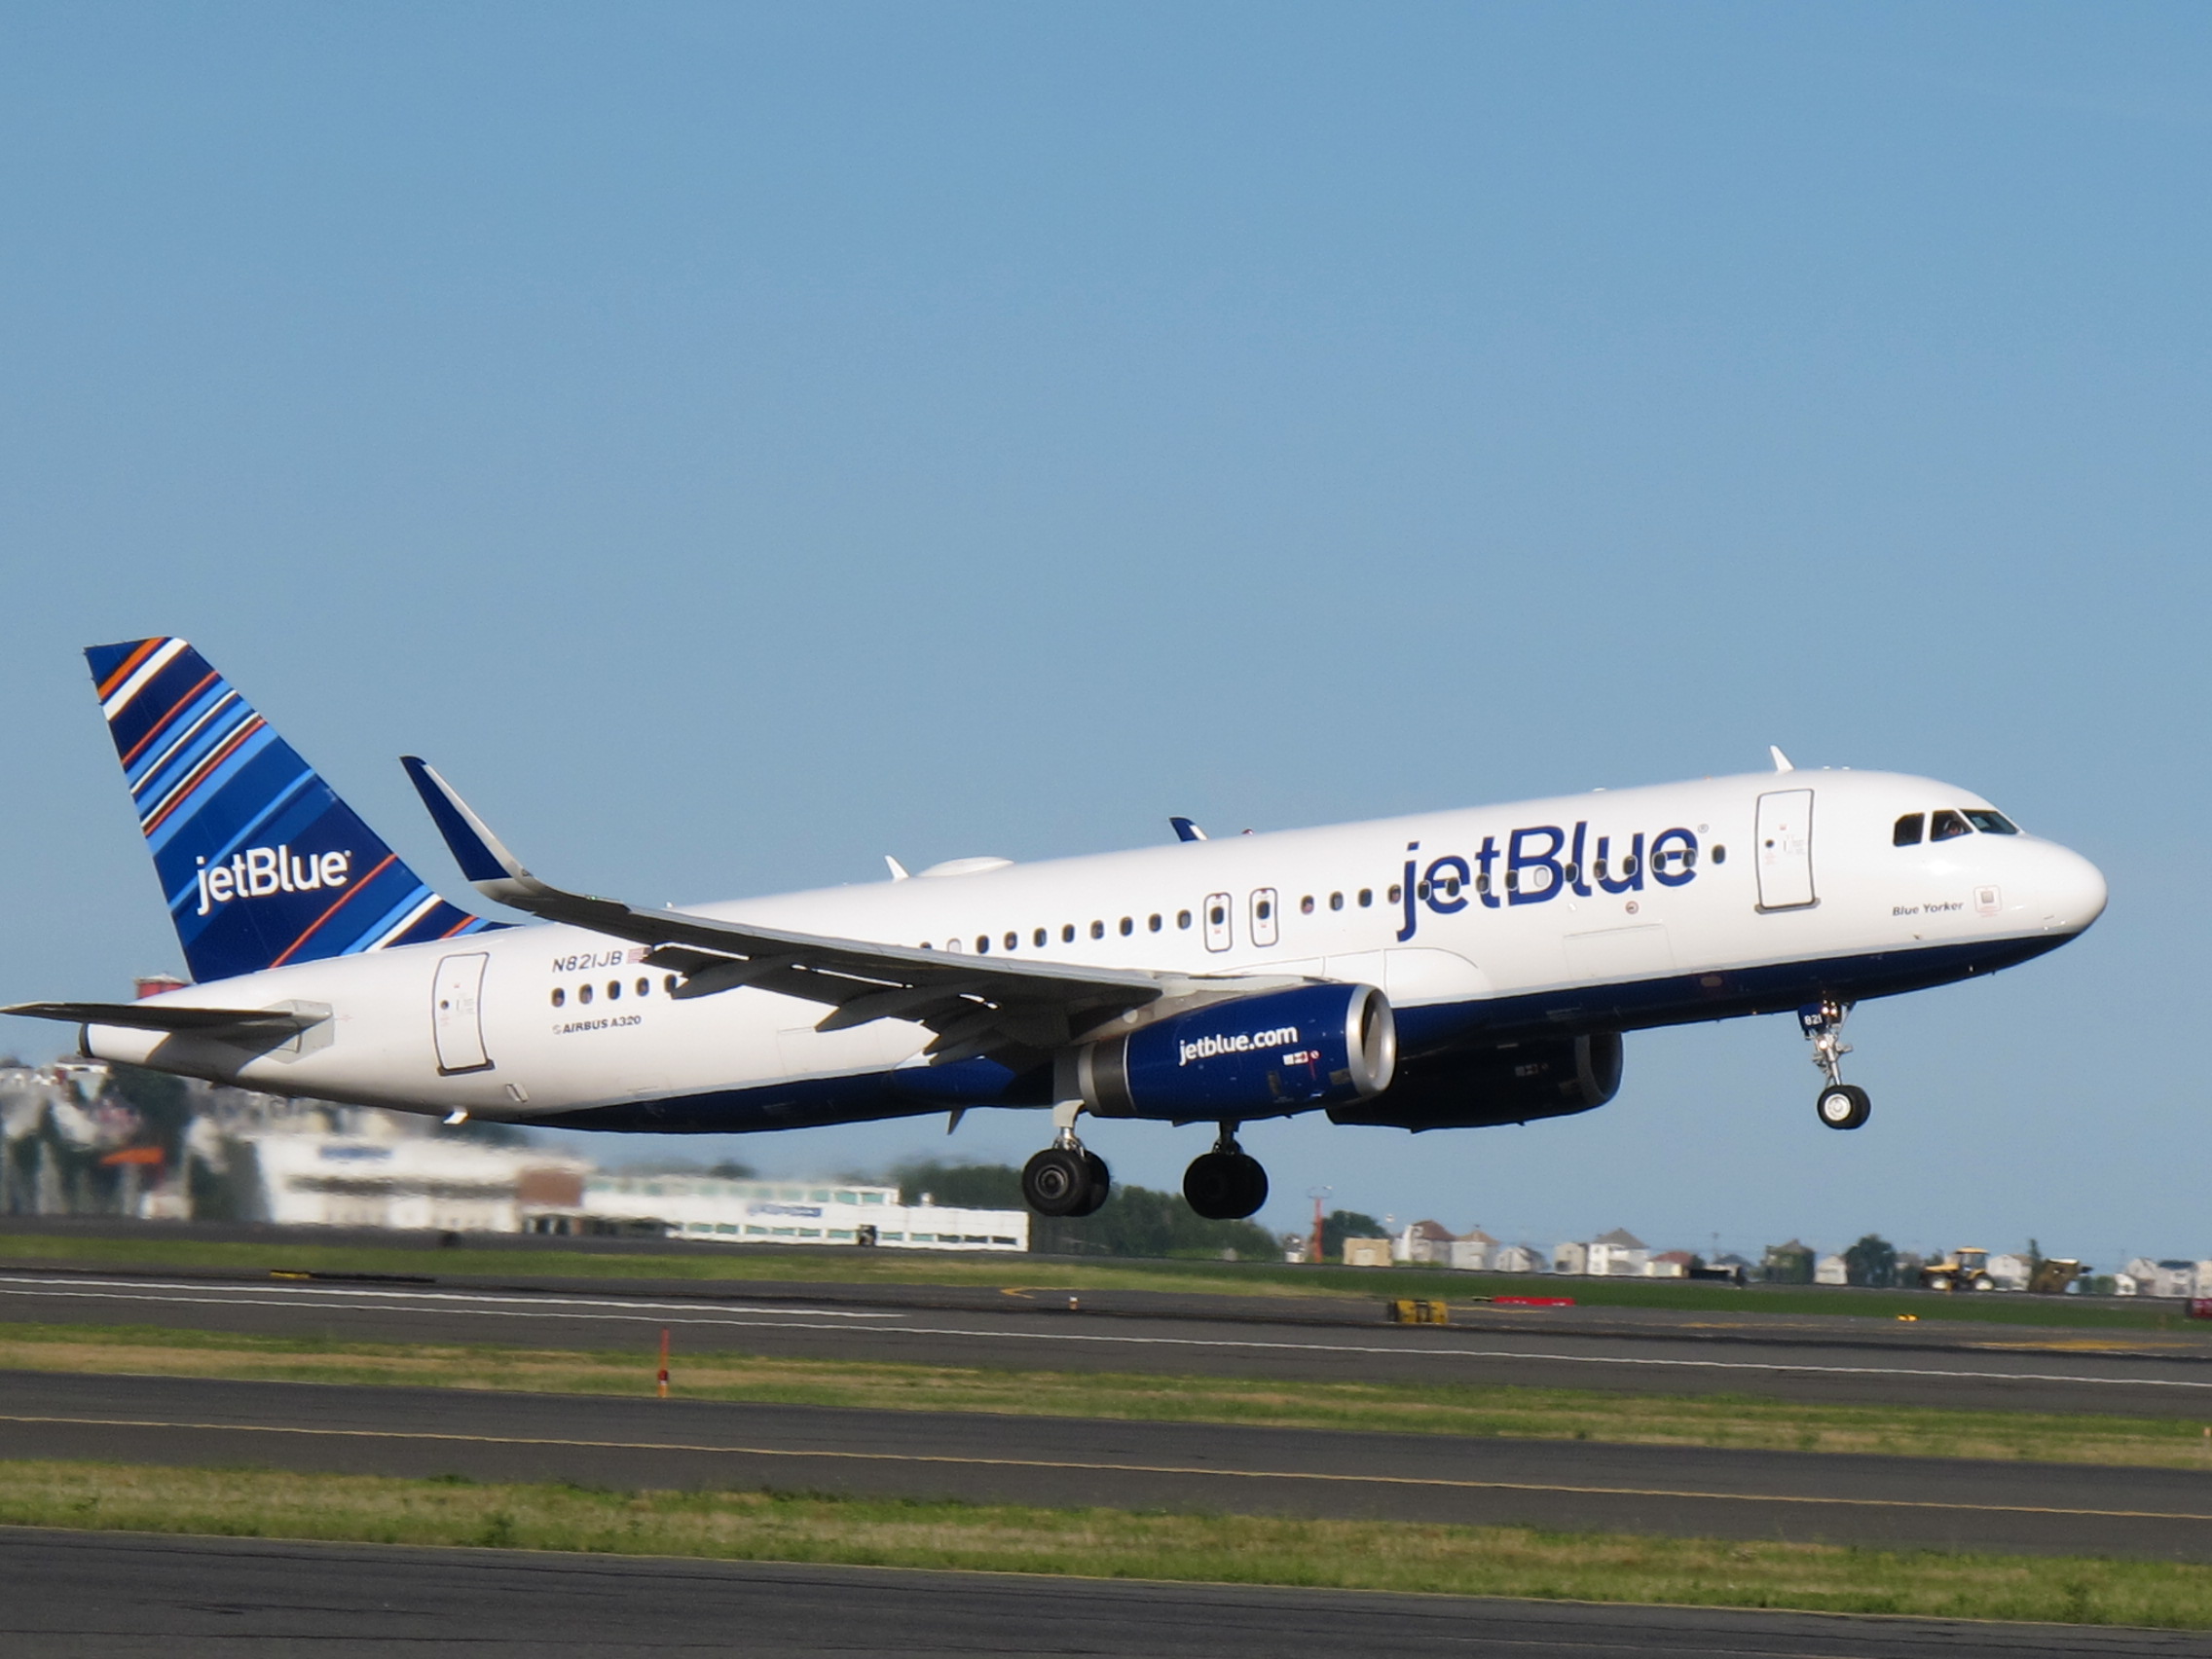 A JetBlue A320 at takeoff.